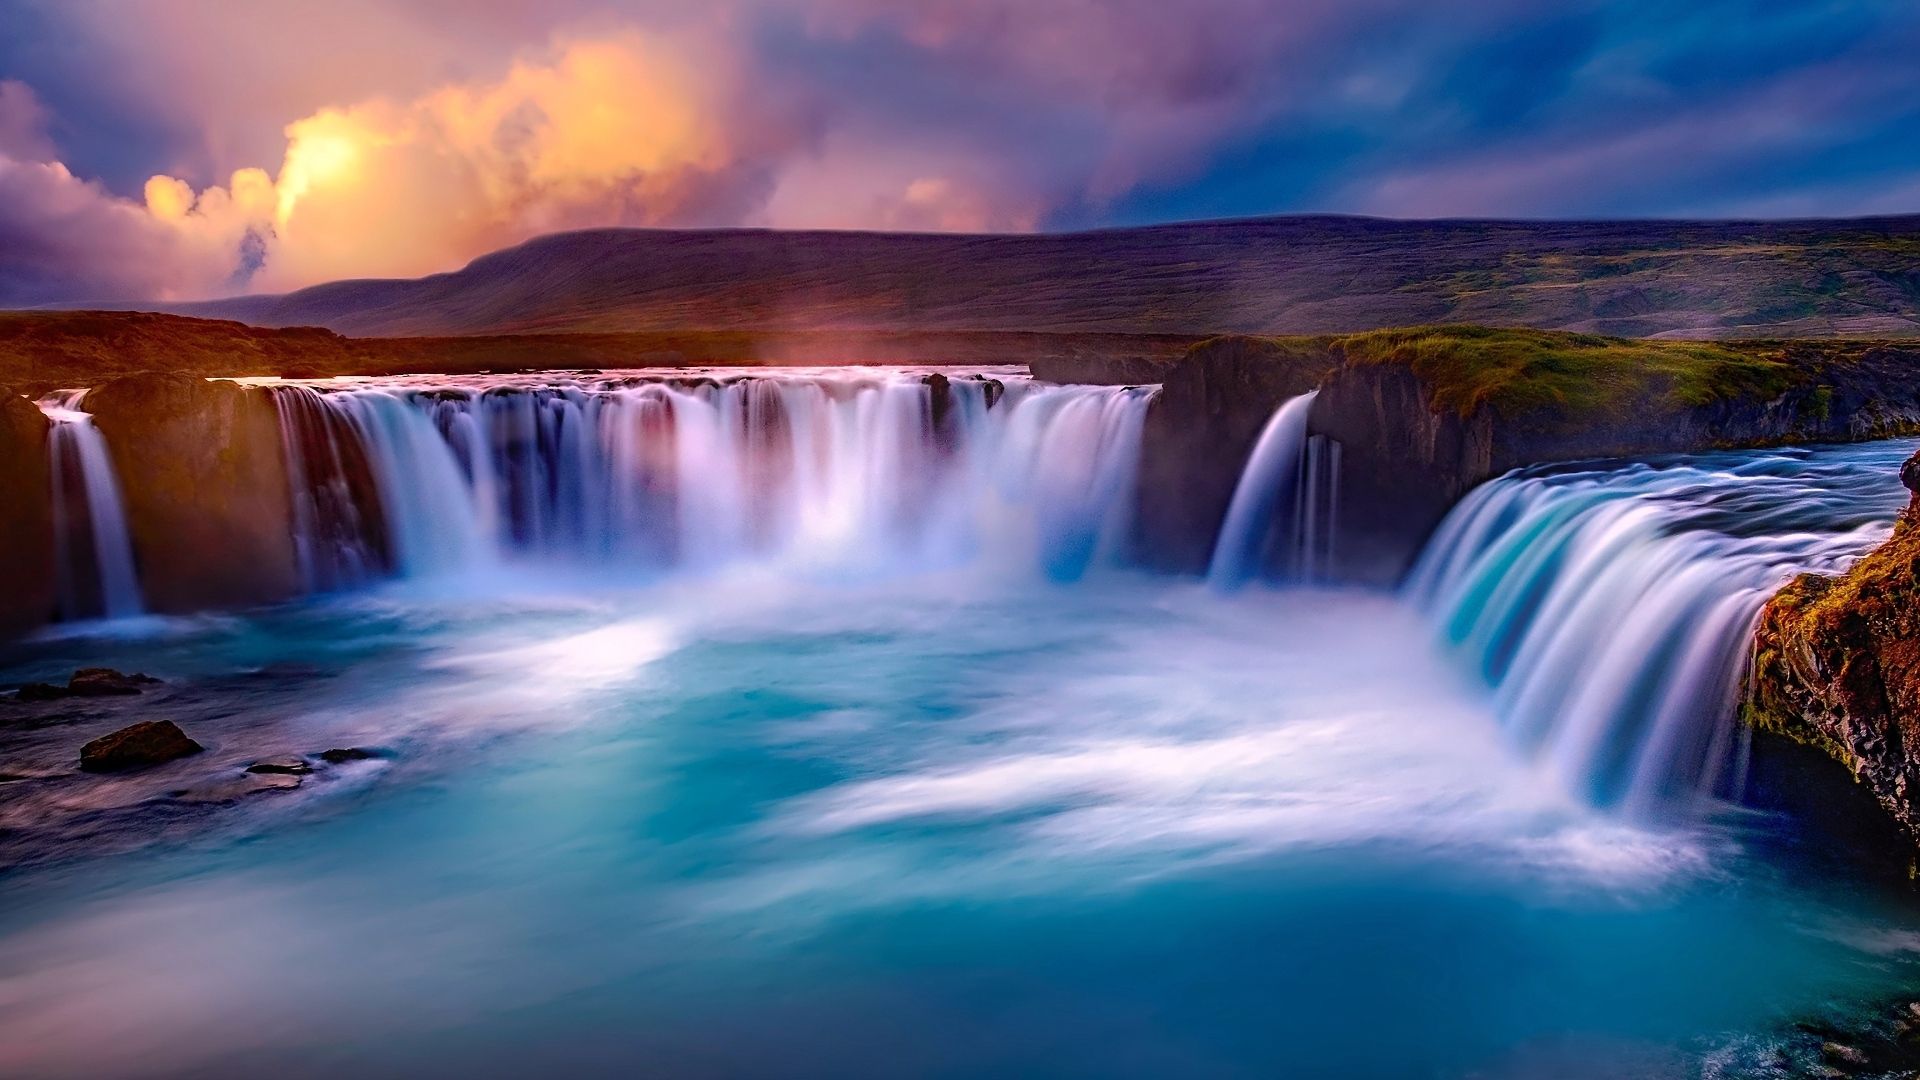  Die Schönsten Hintergrundbild 1920x1080. Bilder Wasserfall Kostenlos